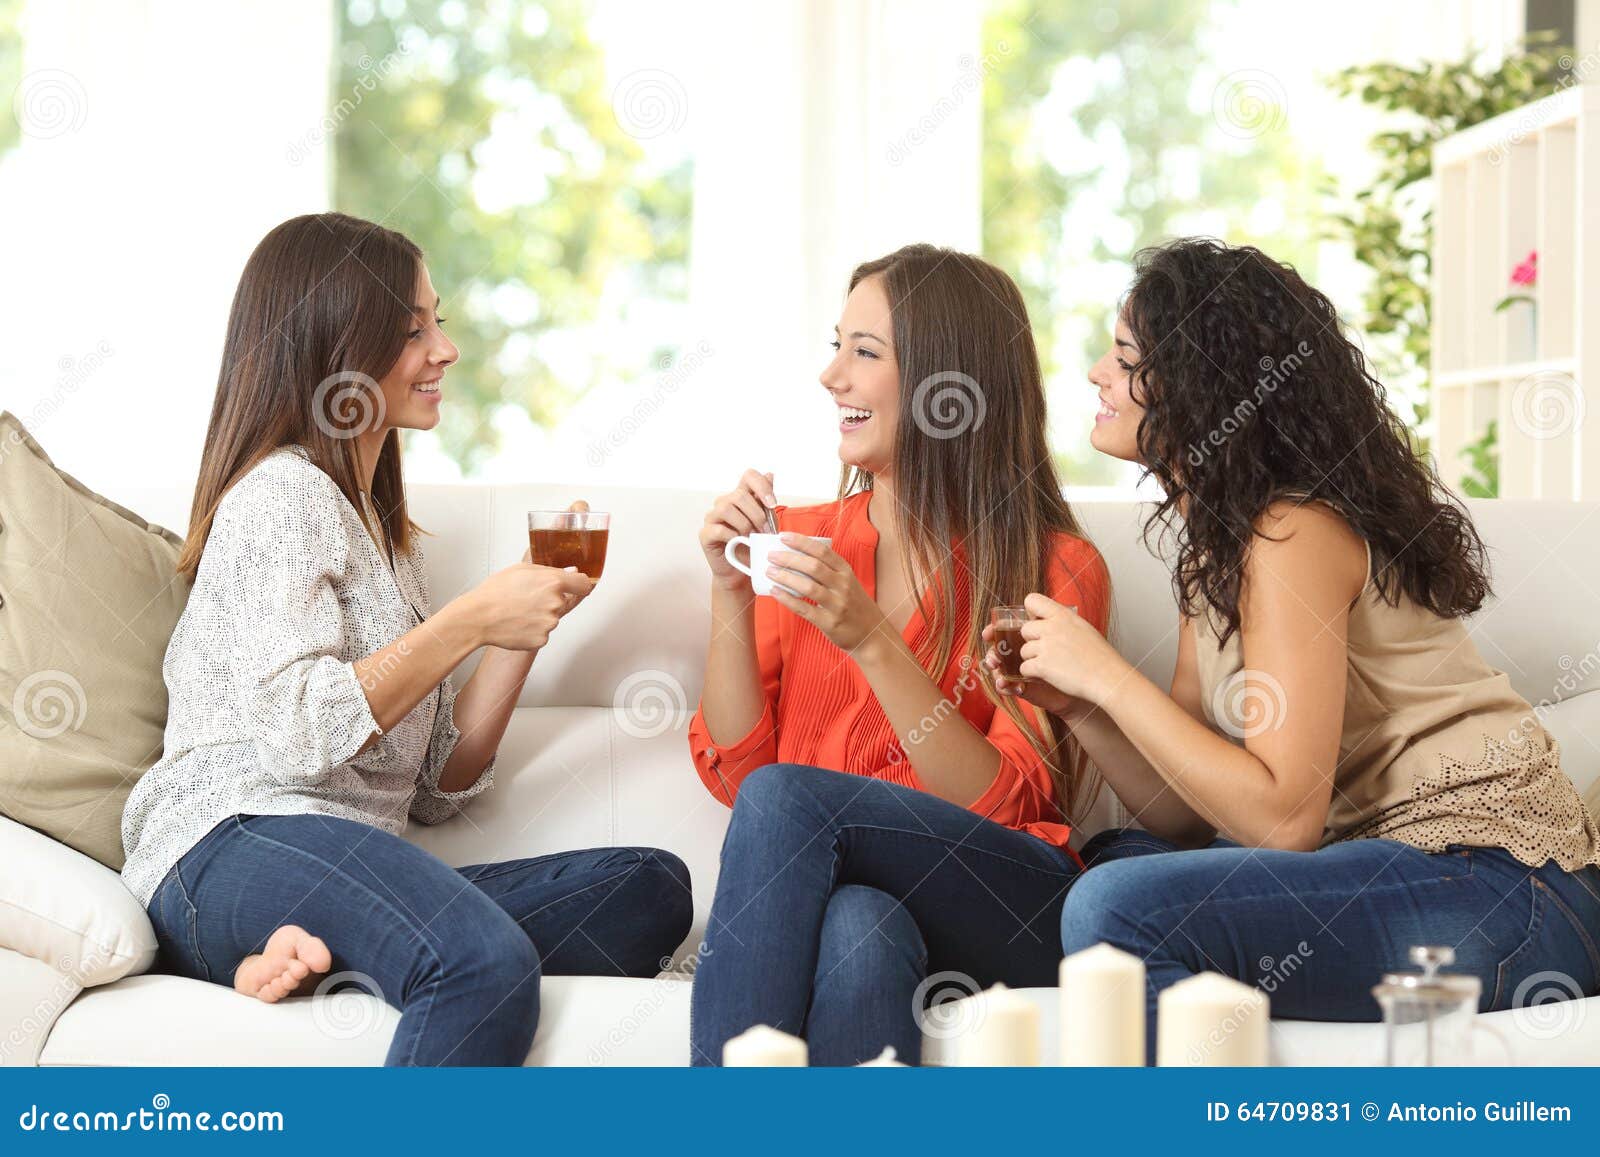 three friends talking at home